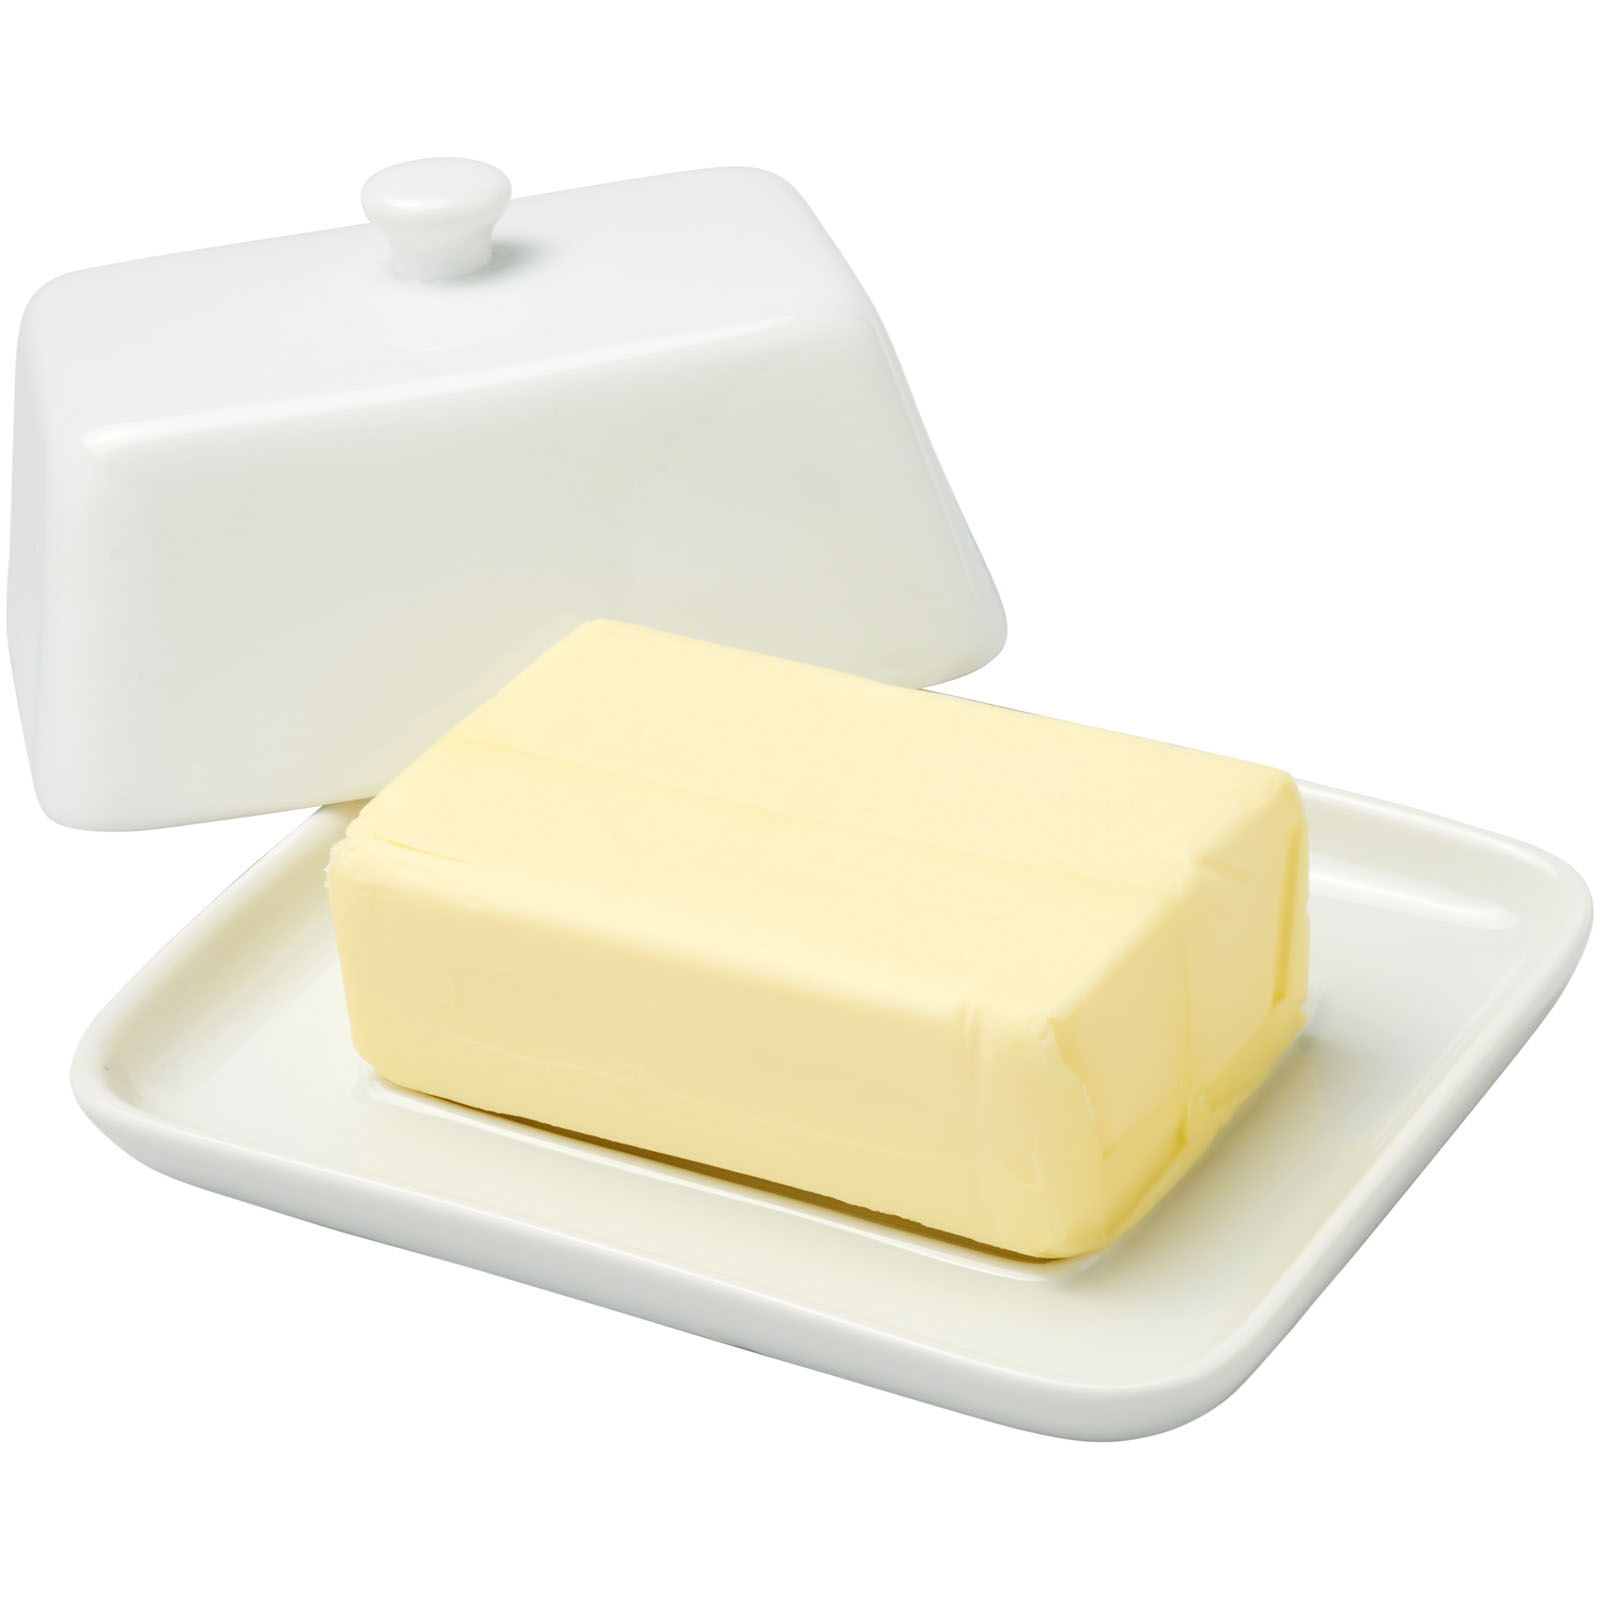 Butter Keeper - Buckland Monachorum - Gornal